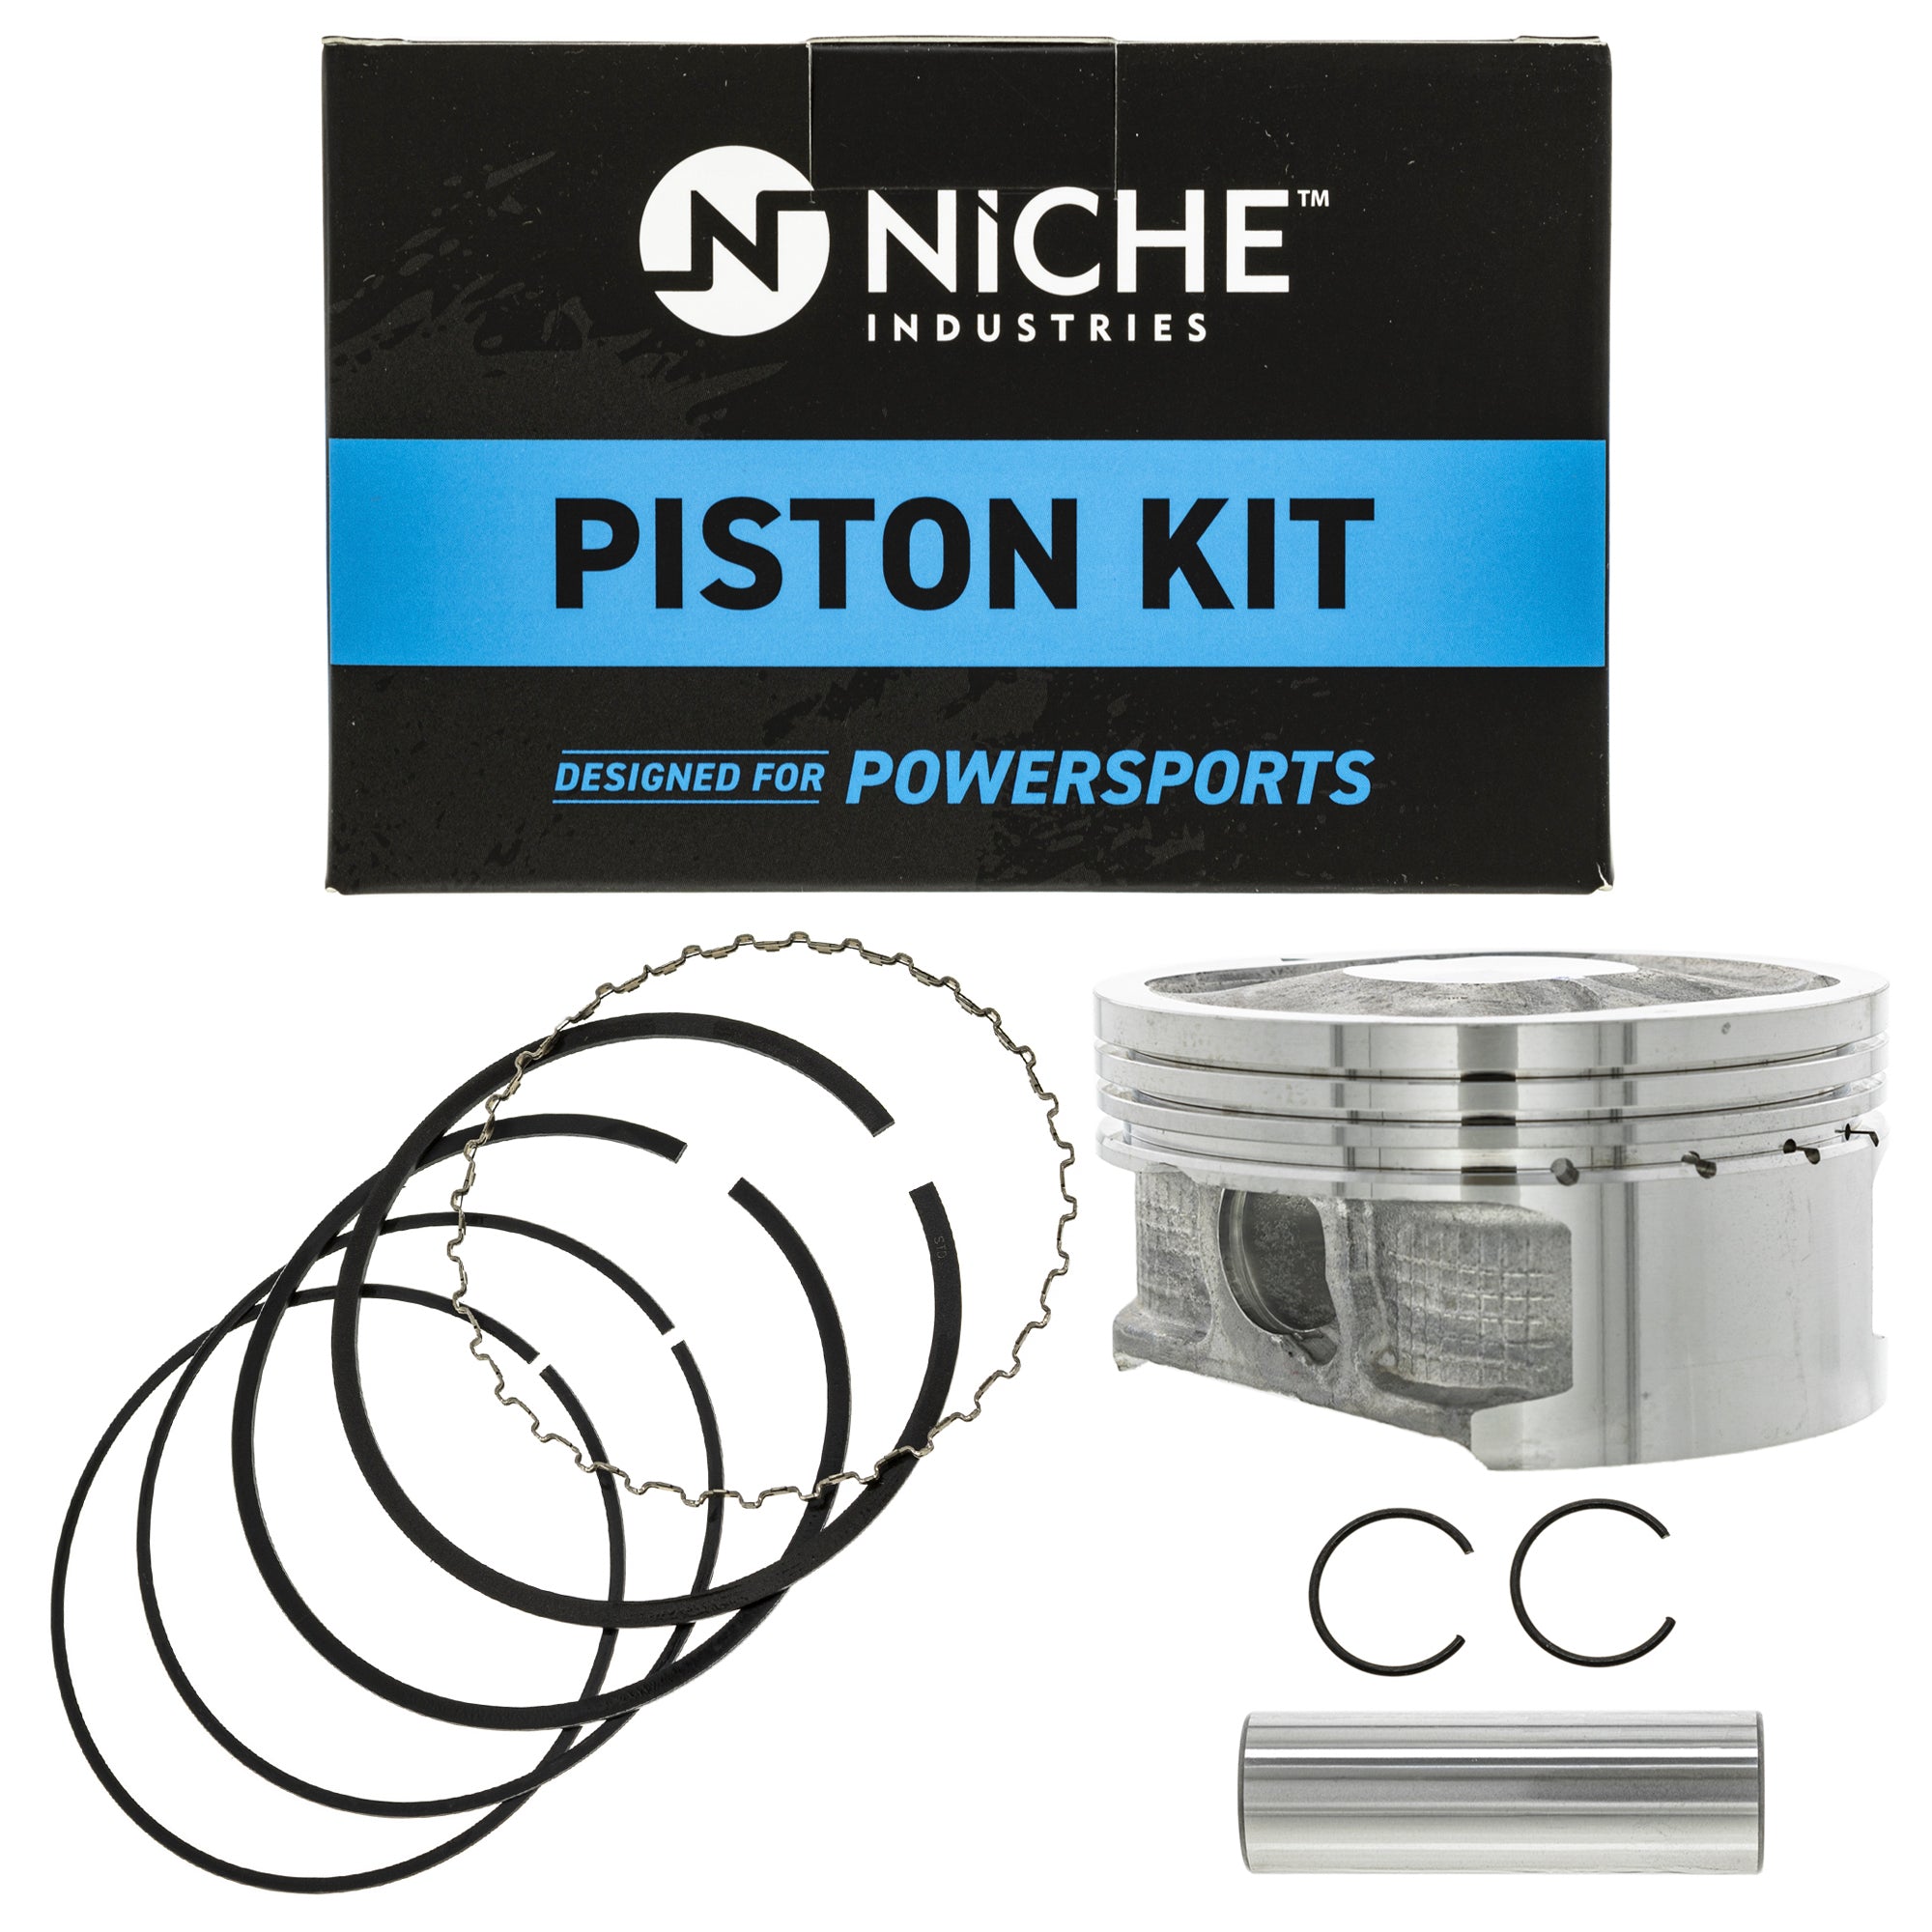 NICHE MK1001145 Piston Kit